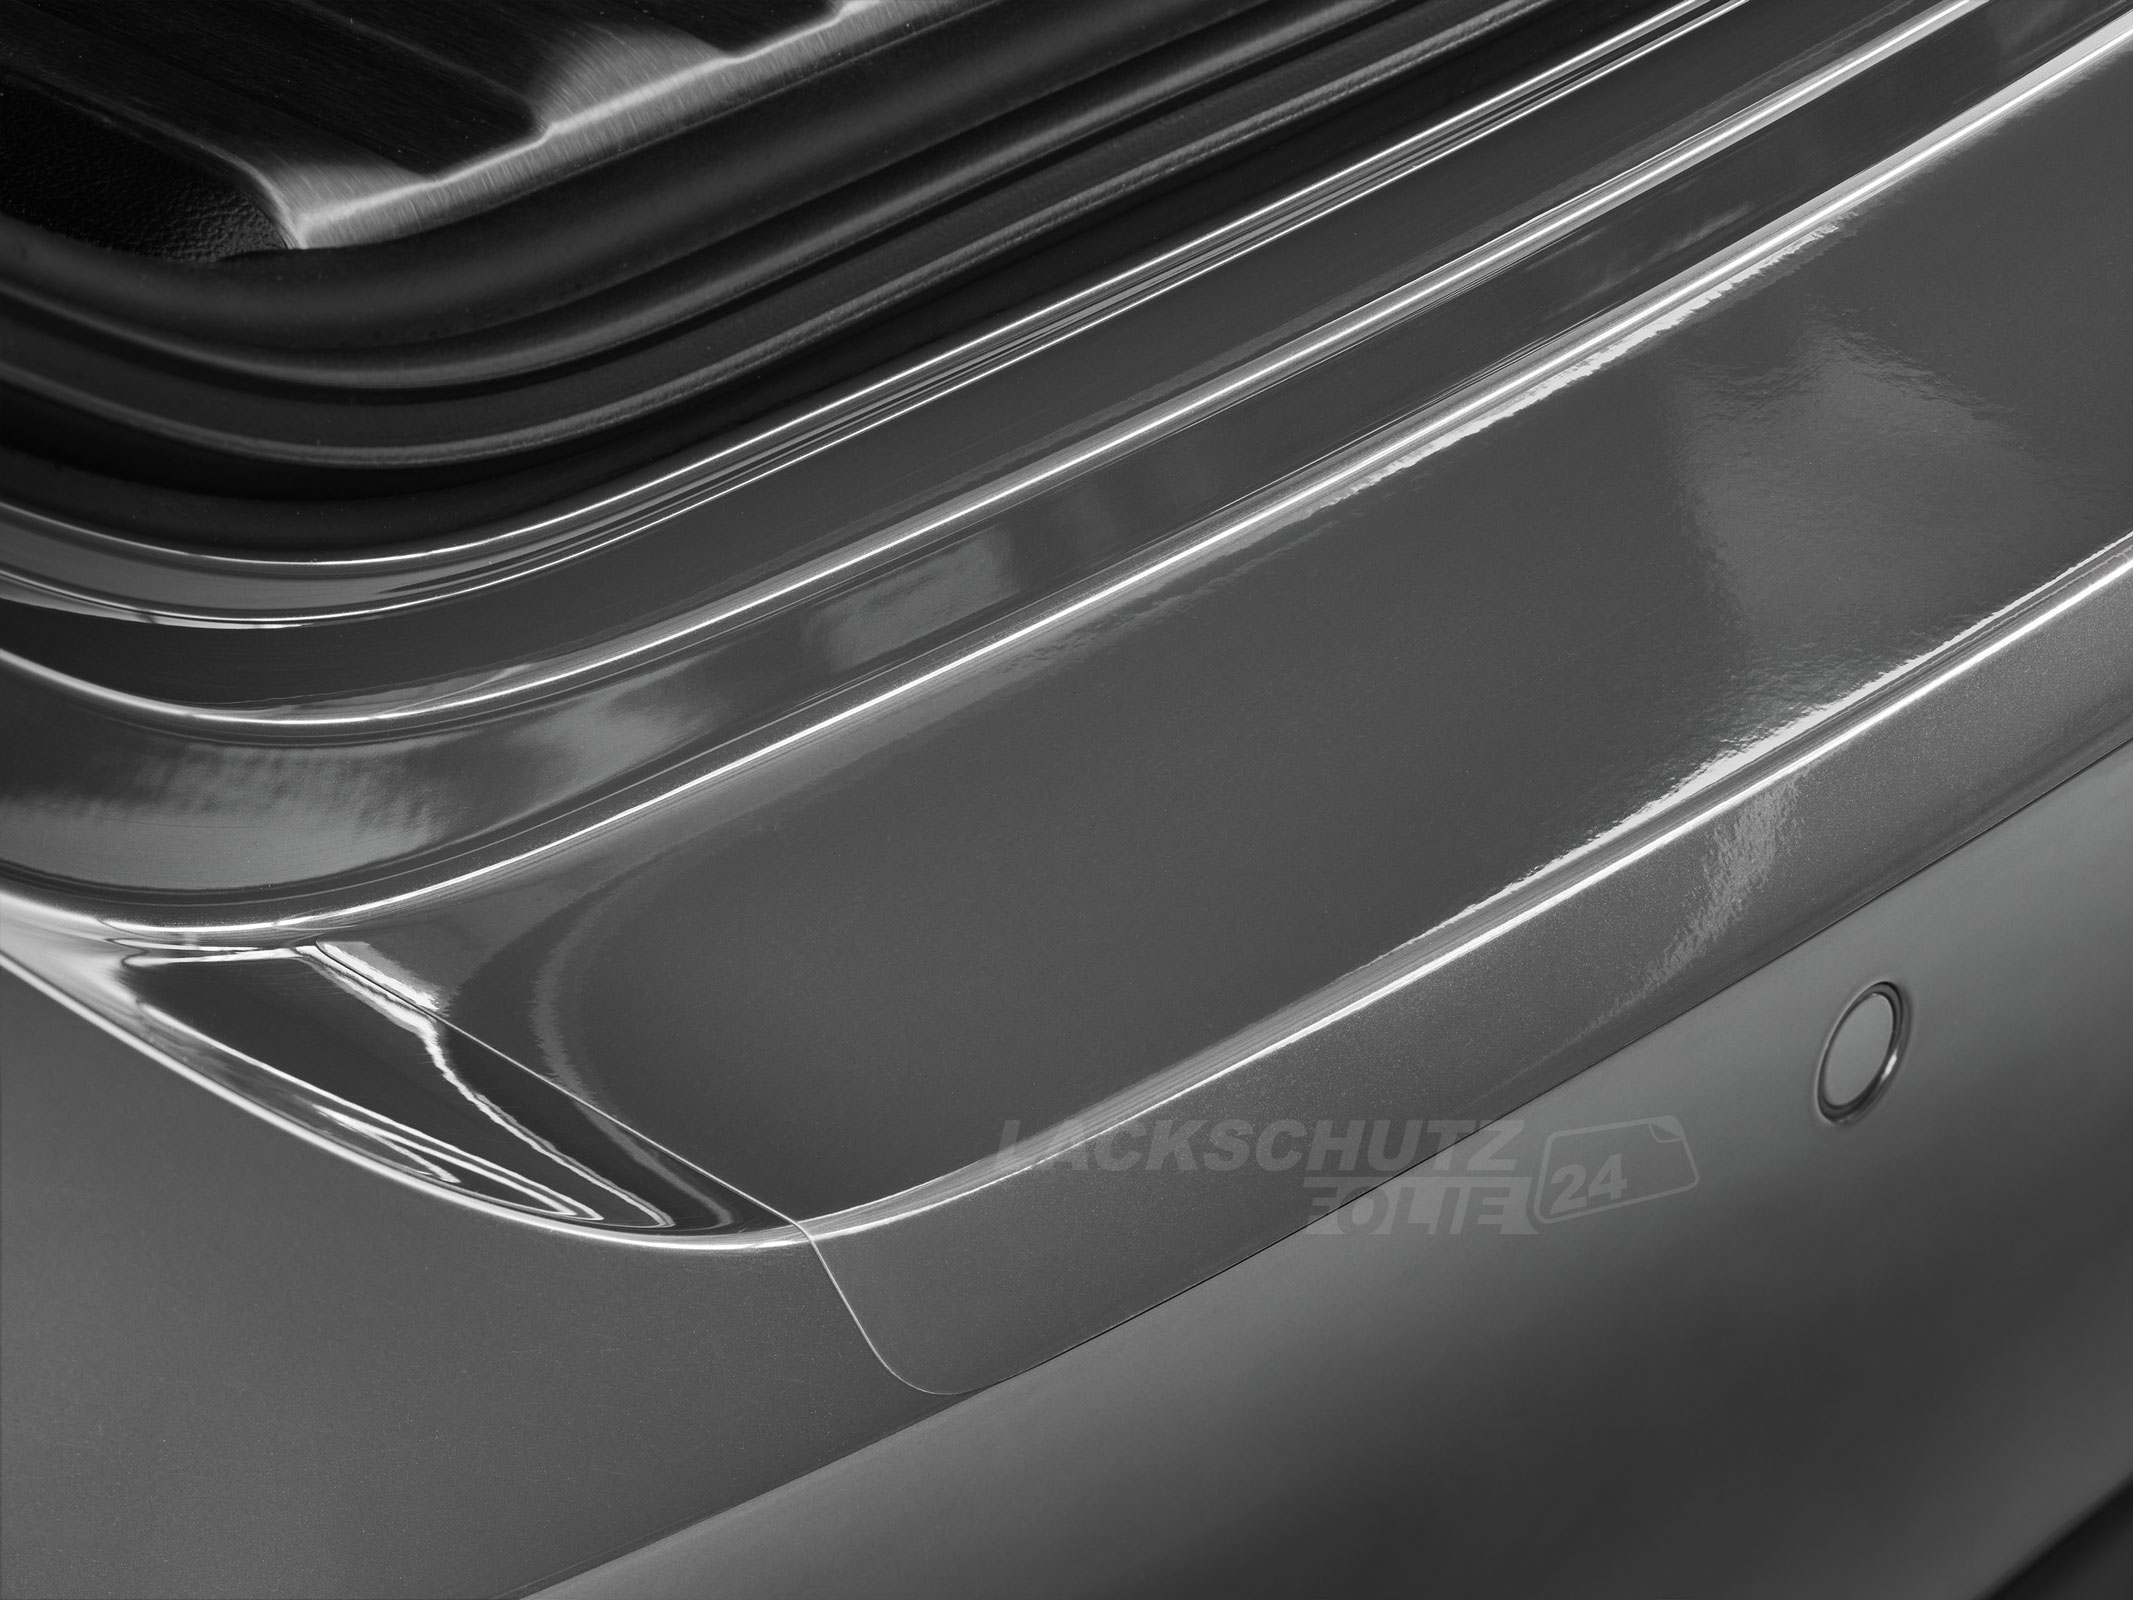 Ladekantenschutzfolie - Transparent Glatt Hochglänzend 240 µm stark für Mercedes-Benz C-Klasse Cabriolet Typ A205, ab BJ 03/2016